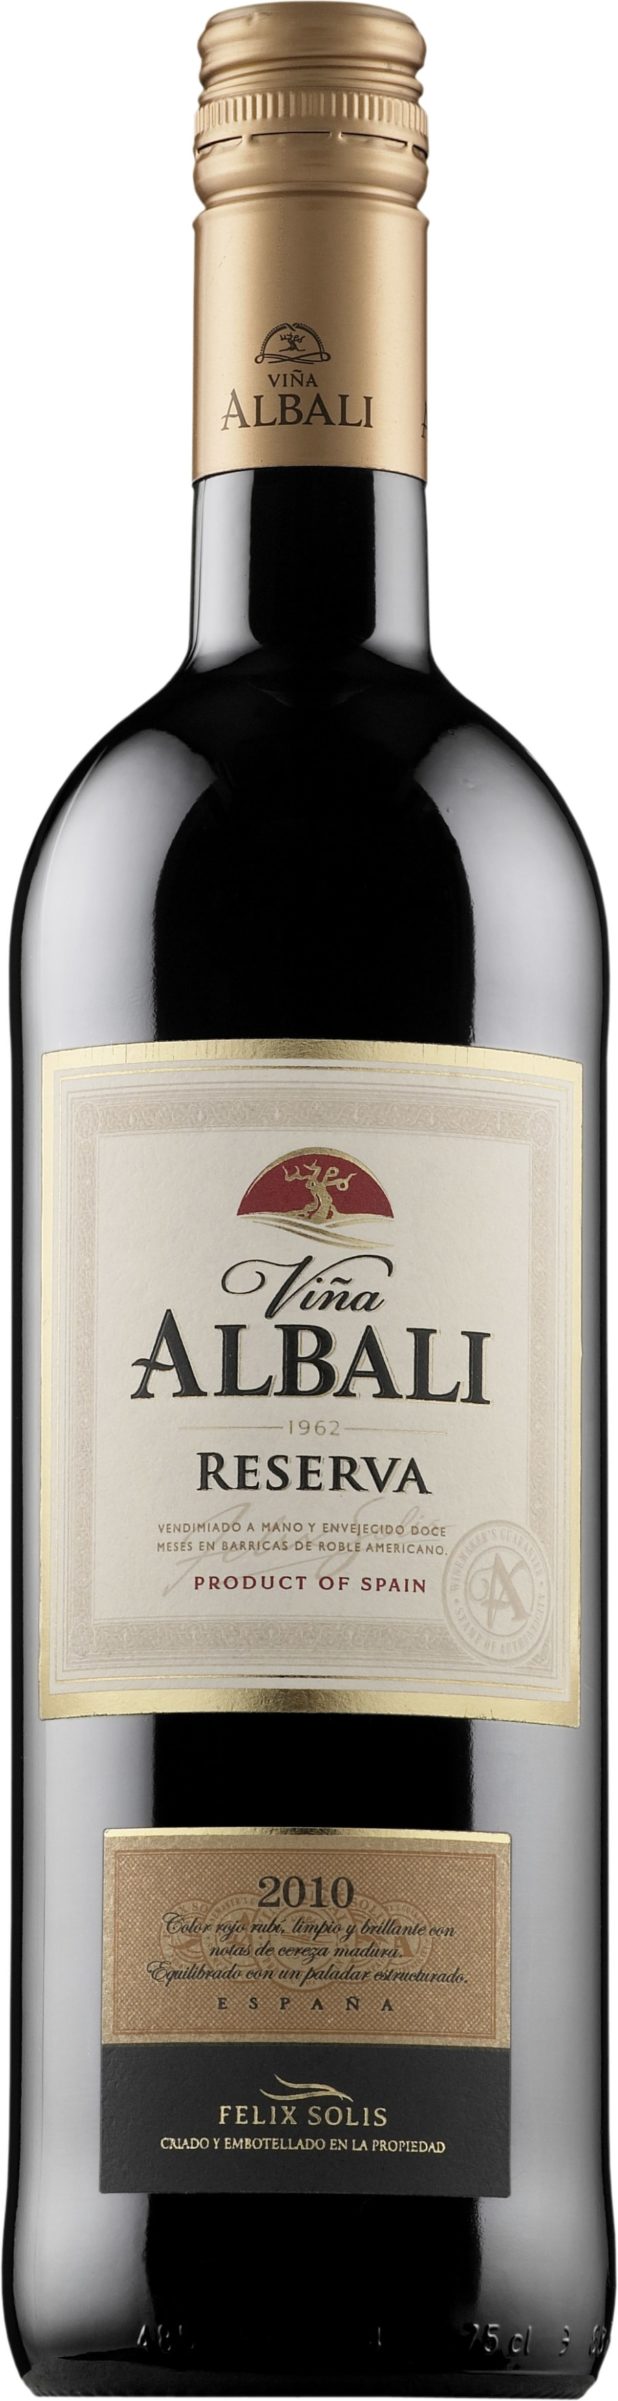 Vina albali. Винья Албали. Вино Albali reserva. Вино Albali reserva Испания. Вино zaebali reserva Испания.